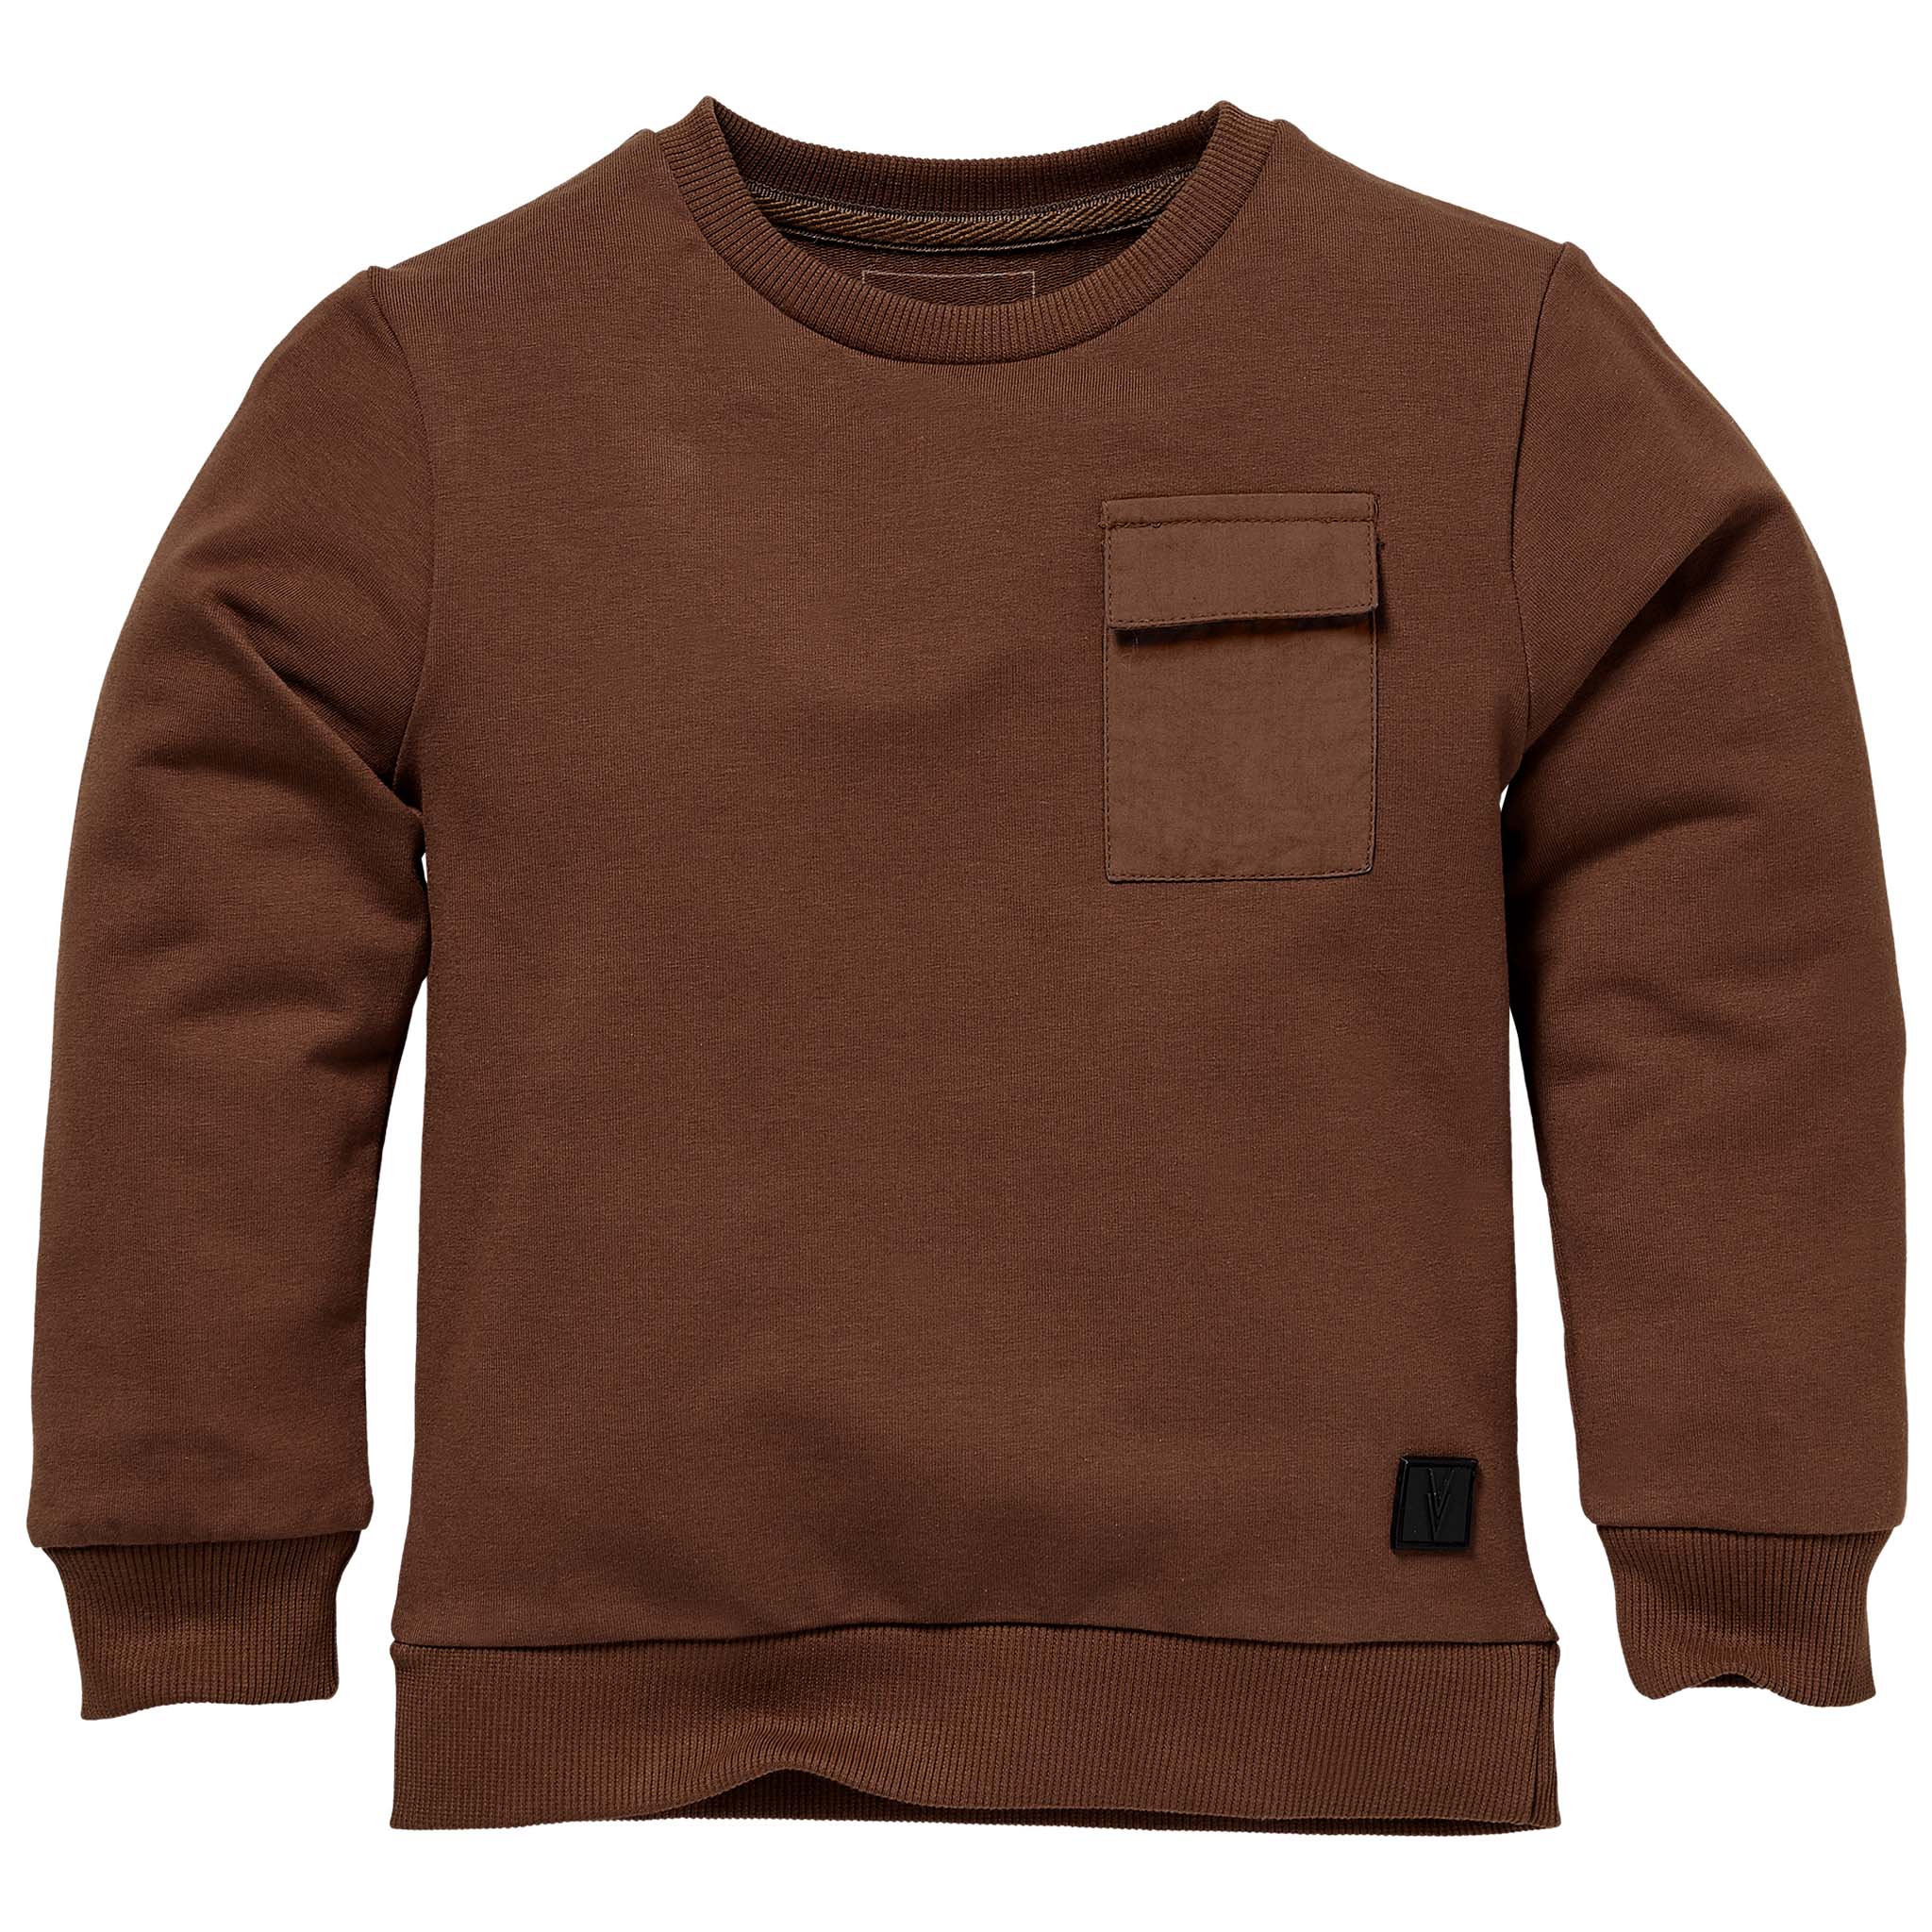 Jongens Sweater SERGE W212 van Little Levv in de kleur Rust in maat 116.